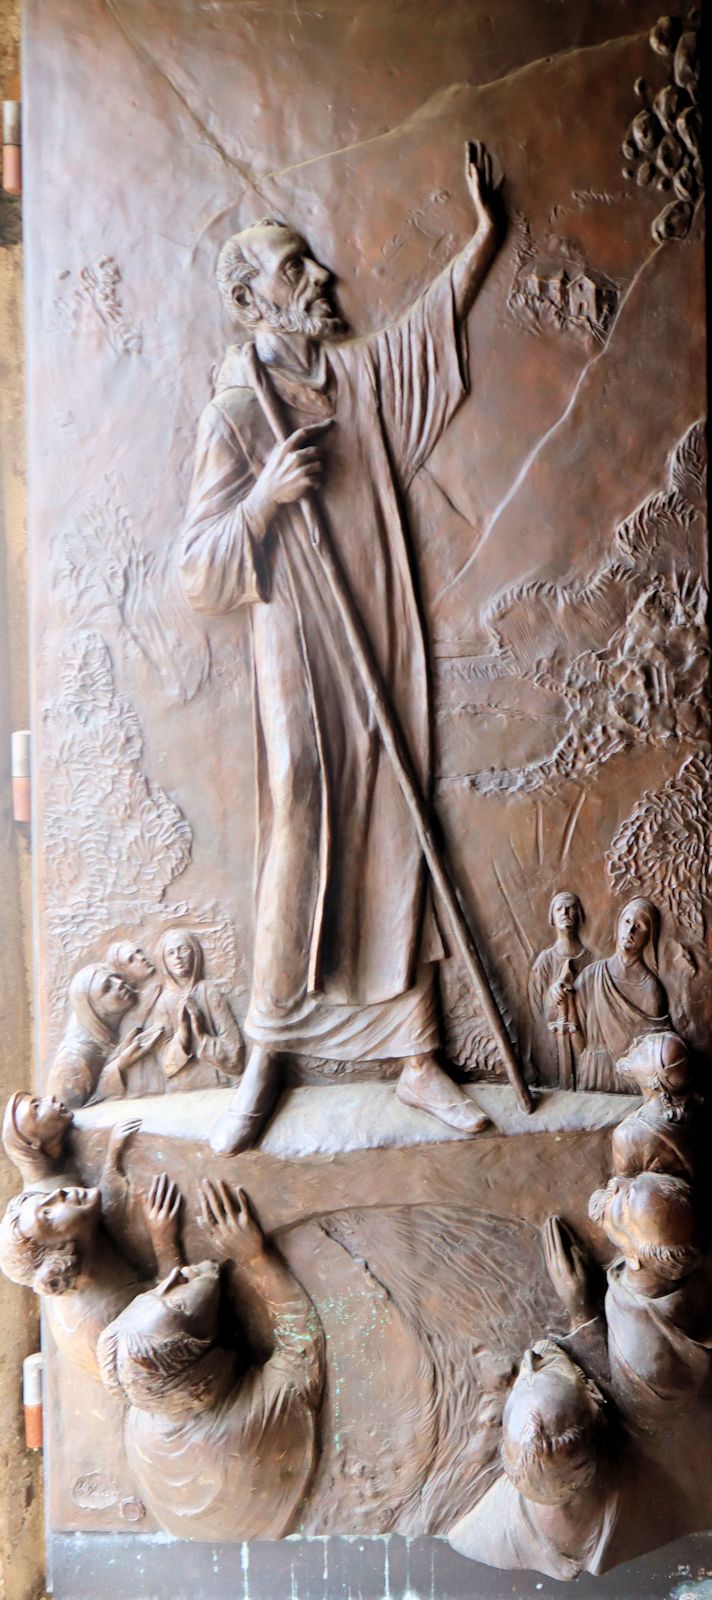 Alessandro Romano: Dominikus stoppt einen vom Teufel geworfenen Felsbrocken, Bronzetür, 2009, an der Kirche San Domenico in Sora